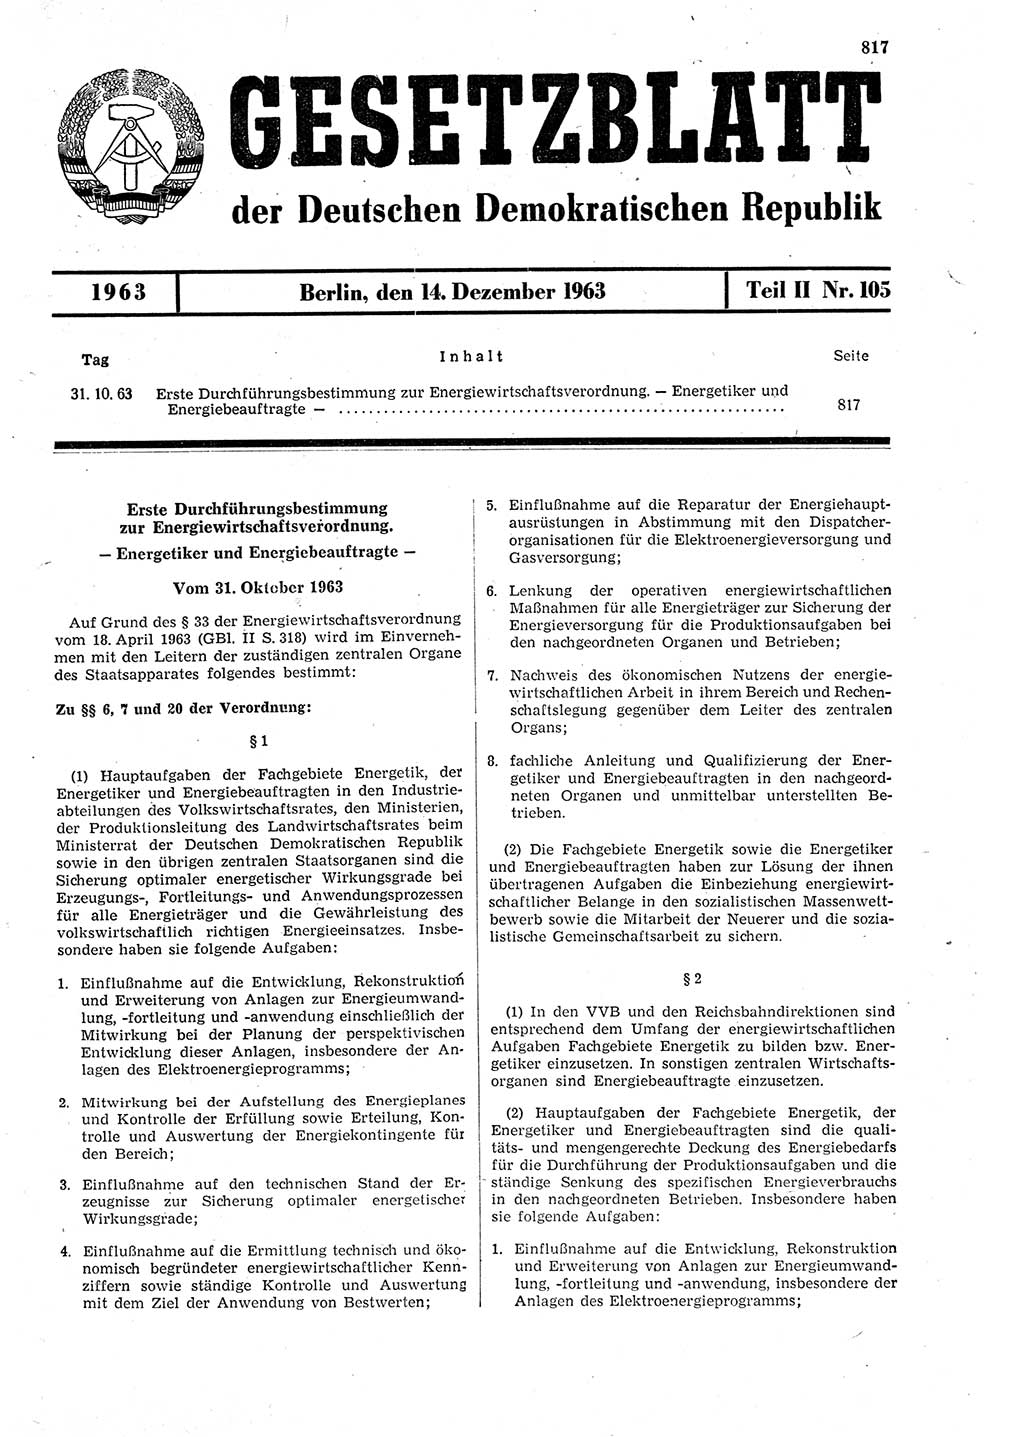 Gesetzblatt (GBl.) der Deutschen Demokratischen Republik (DDR) Teil ⅠⅠ 1963, Seite 817 (GBl. DDR ⅠⅠ 1963, S. 817)